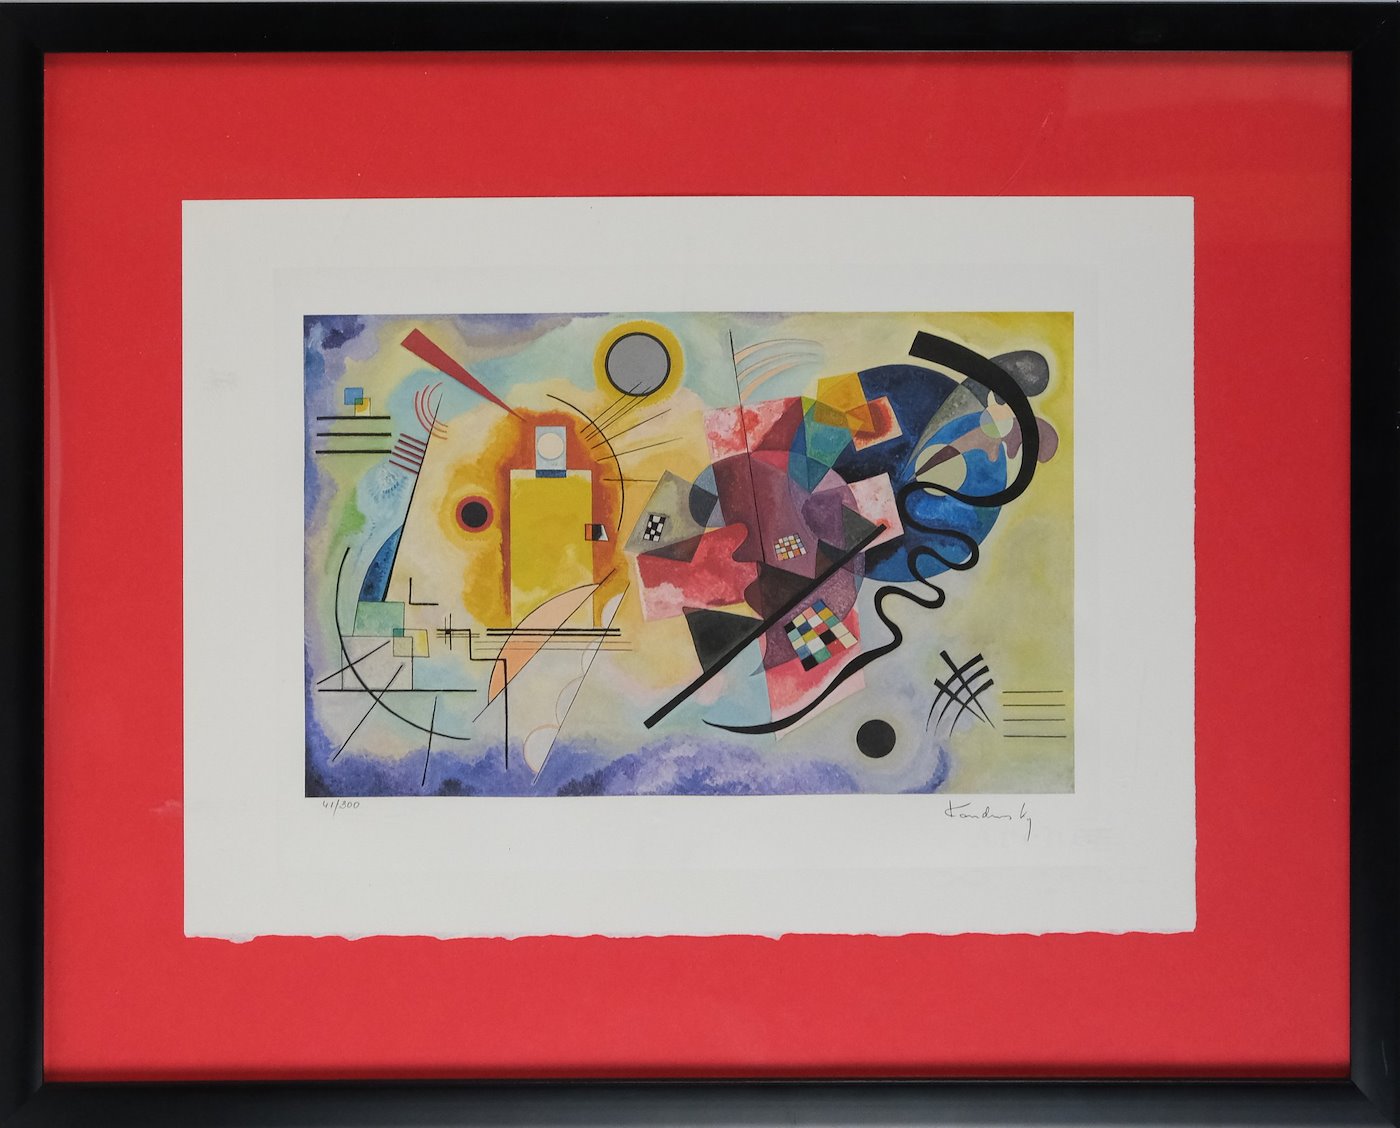 Vasilij Kandinsky - Yellow - Red - Blue, 1925